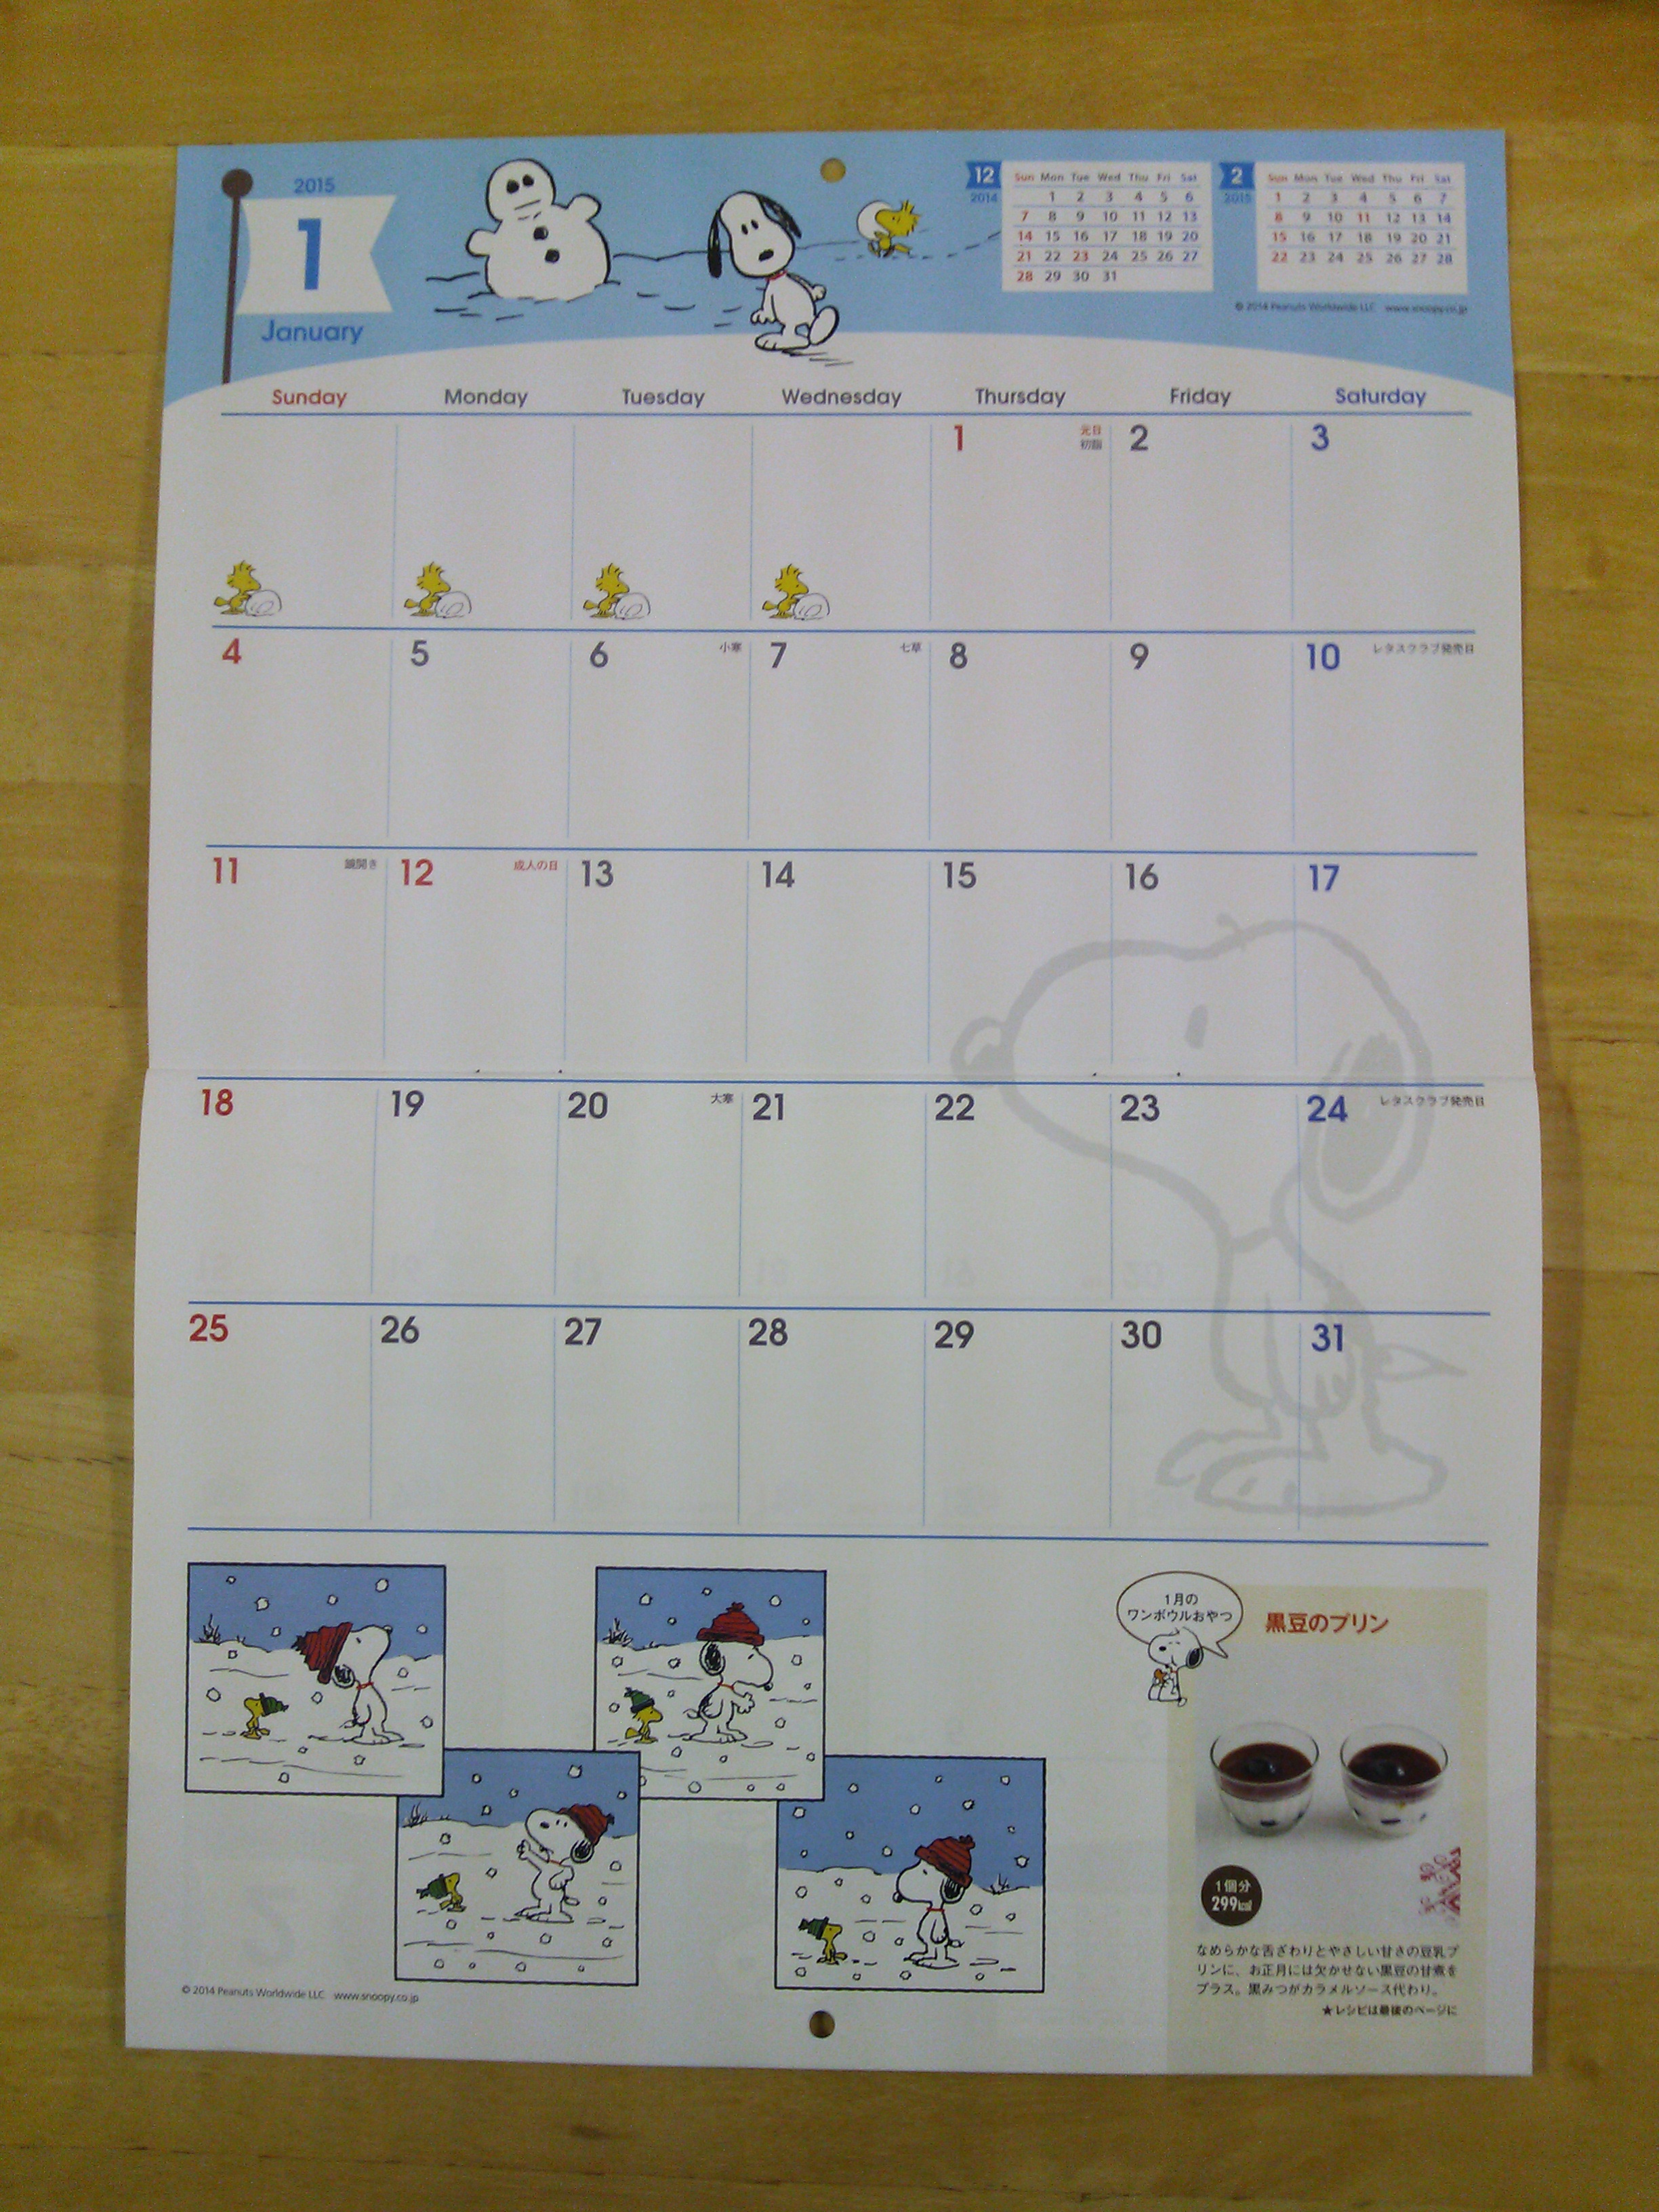 レタスクラブの特大付録 Snoopyカレンダー15 公開するよ 15年もお部屋の壁にスヌーピーがいる スヌーピー大好き女子が集めた スヌーピー最新情報お届けするよ